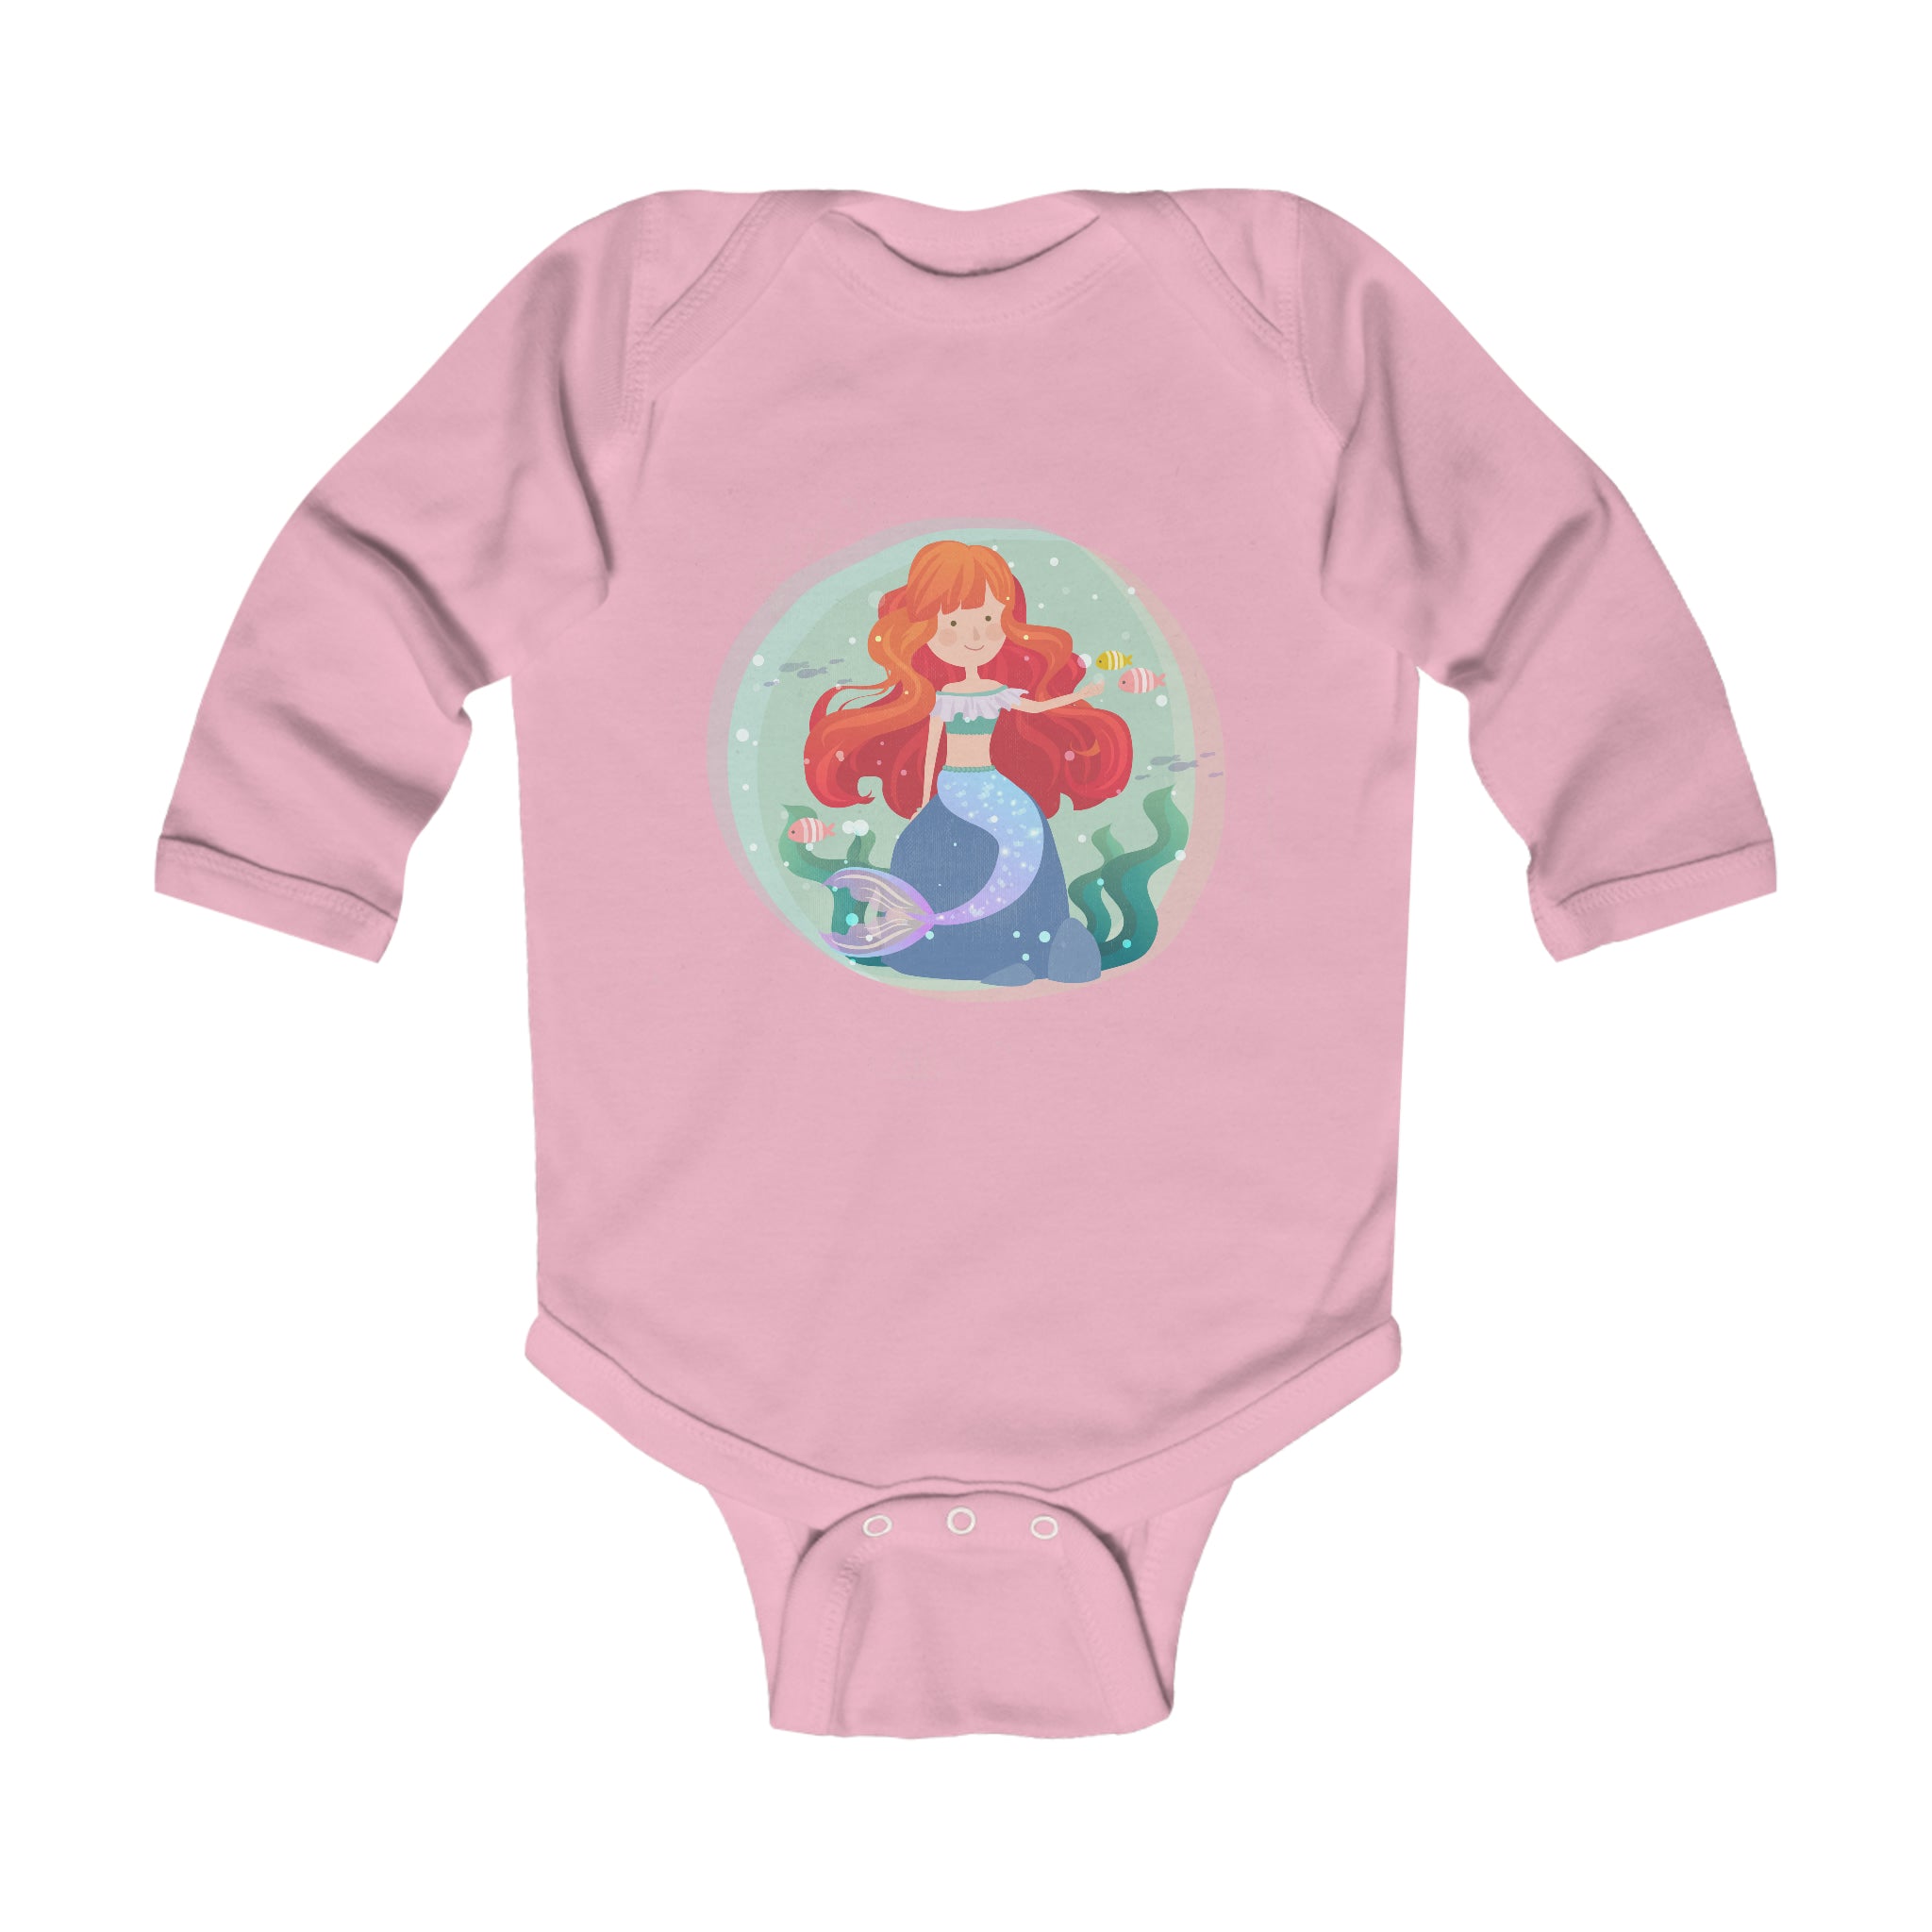 Infant Long Sleeve Bodysuit Adorable Mermaid